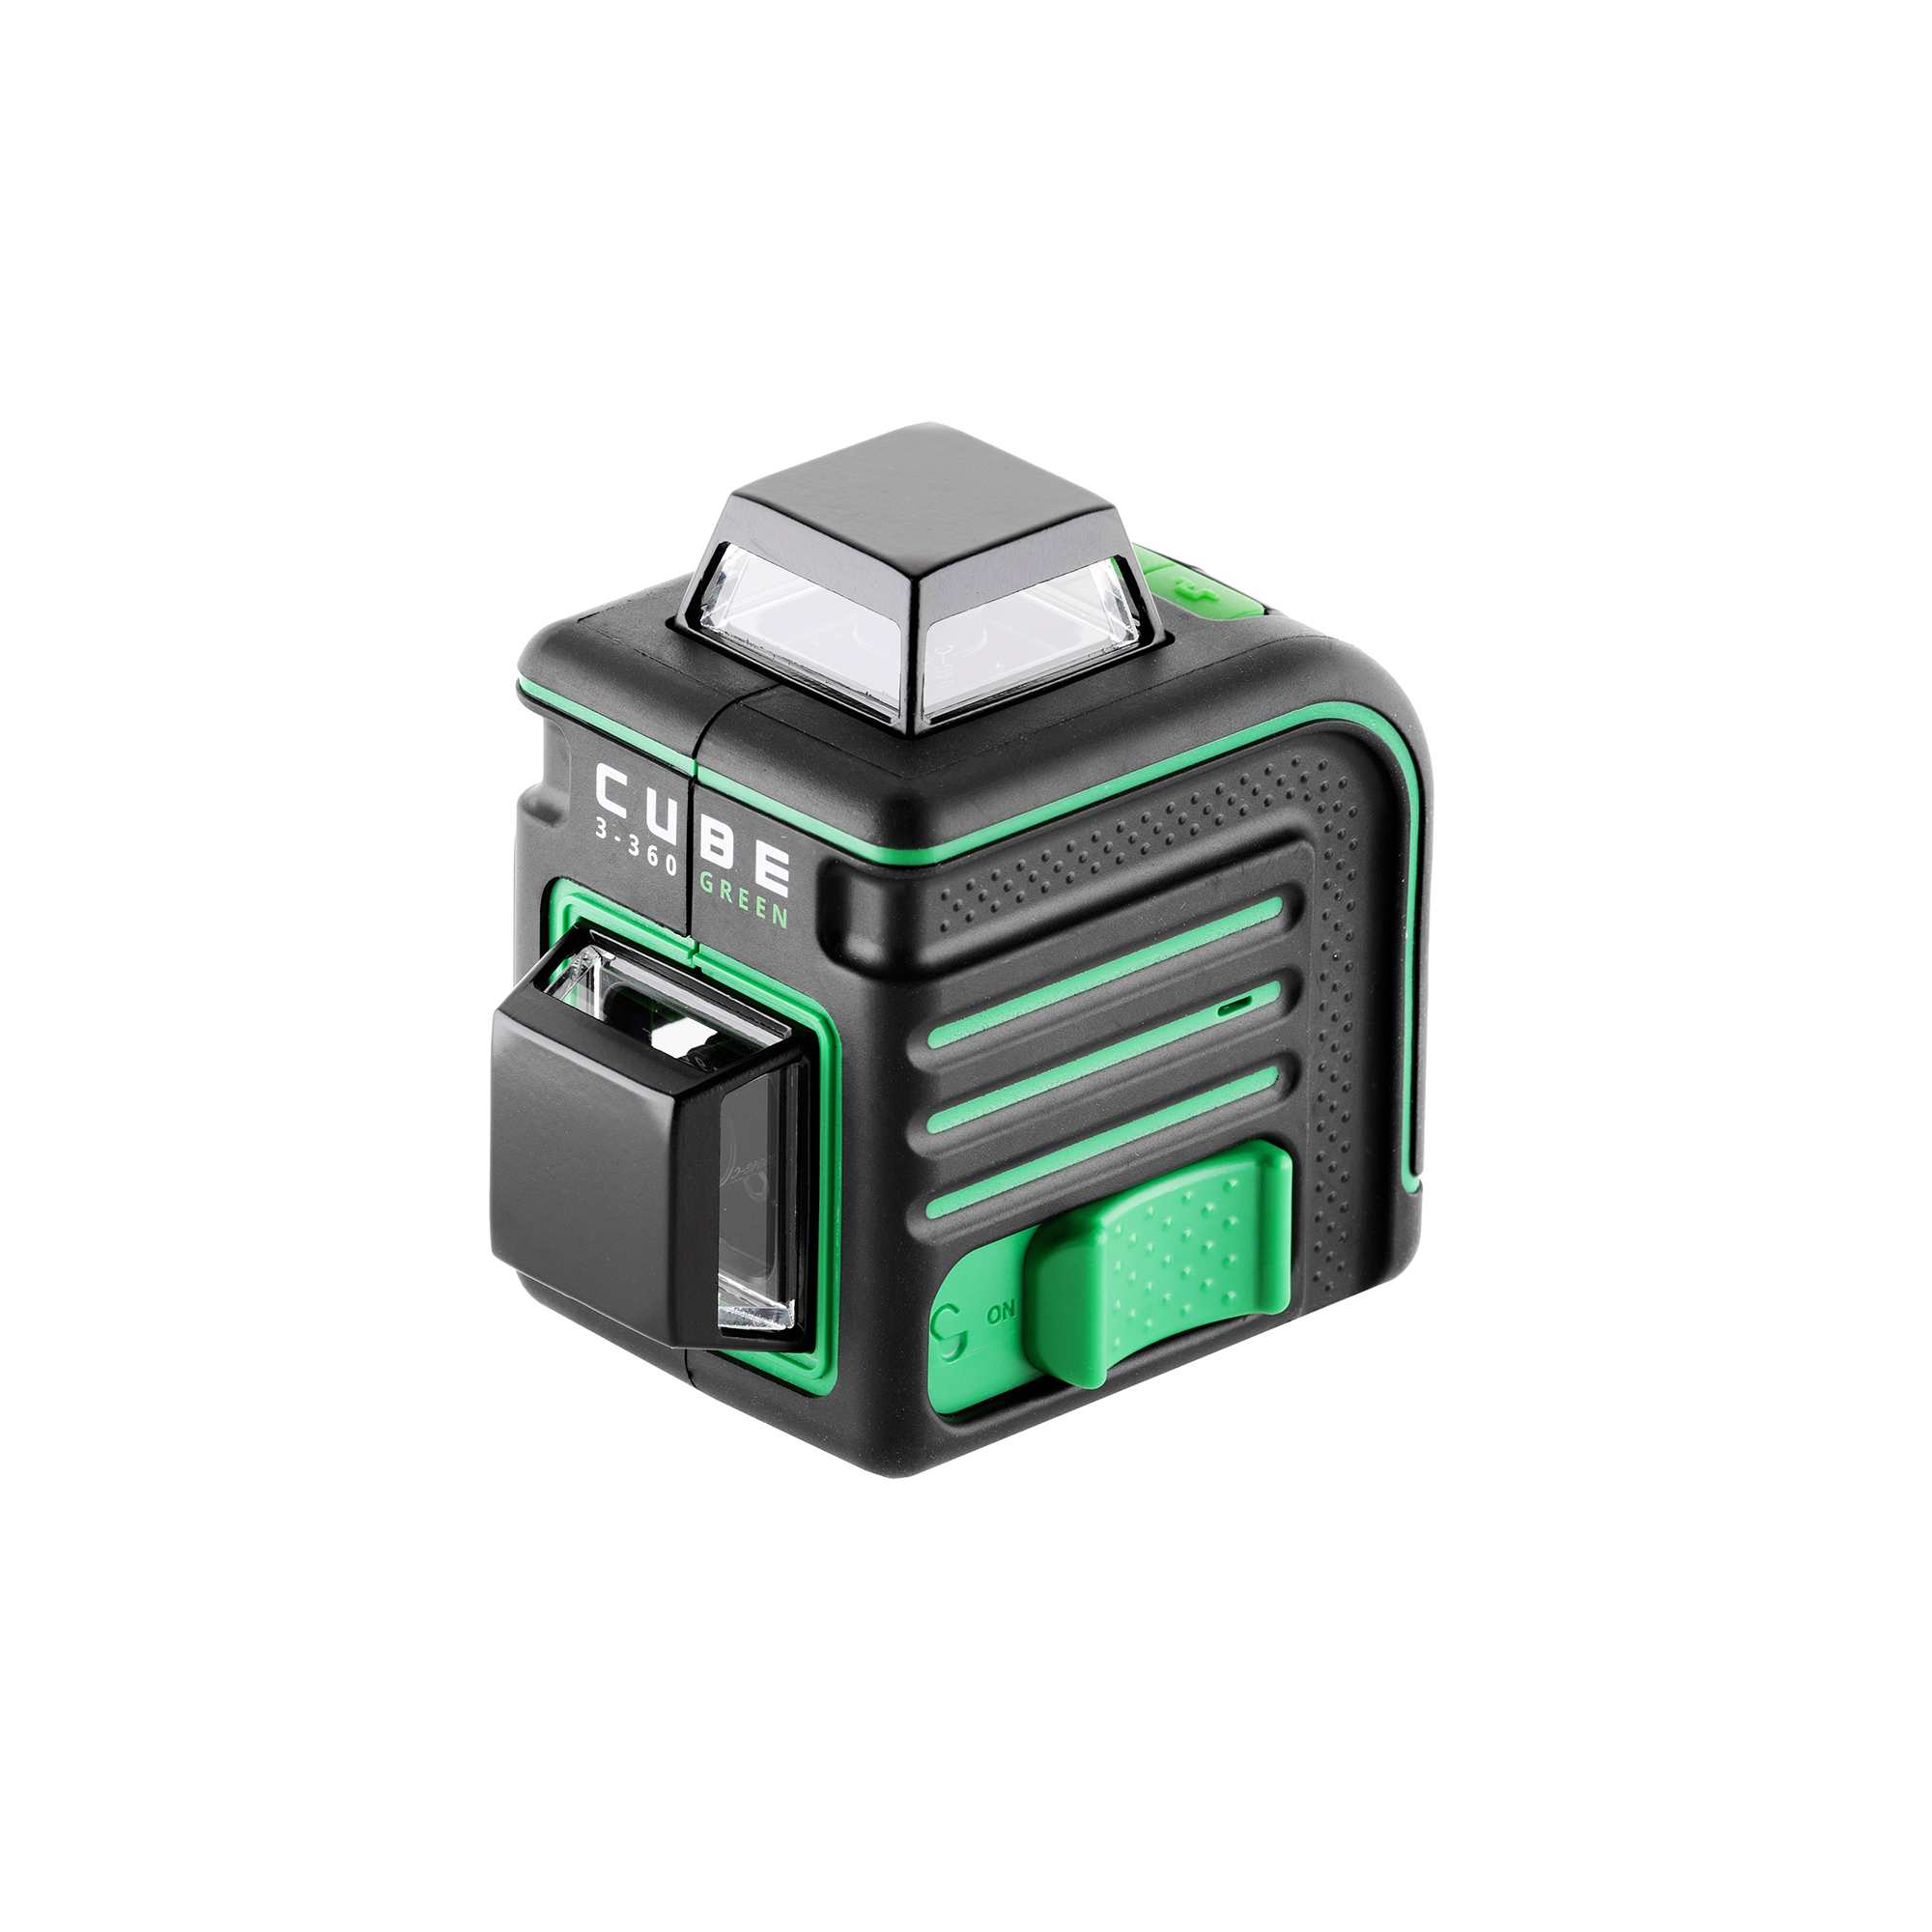 Лазерный уровень cube 360 green. Лазерный уровень ada Cube 3-360 Green. Лазерный уровень ada Cube 3-360 Green Basic Edition а00560. Лазерный уровень ada Cube 3-360 Green Home Edition а00566. Ada Cube 3-360 Green Ultimate Edition.